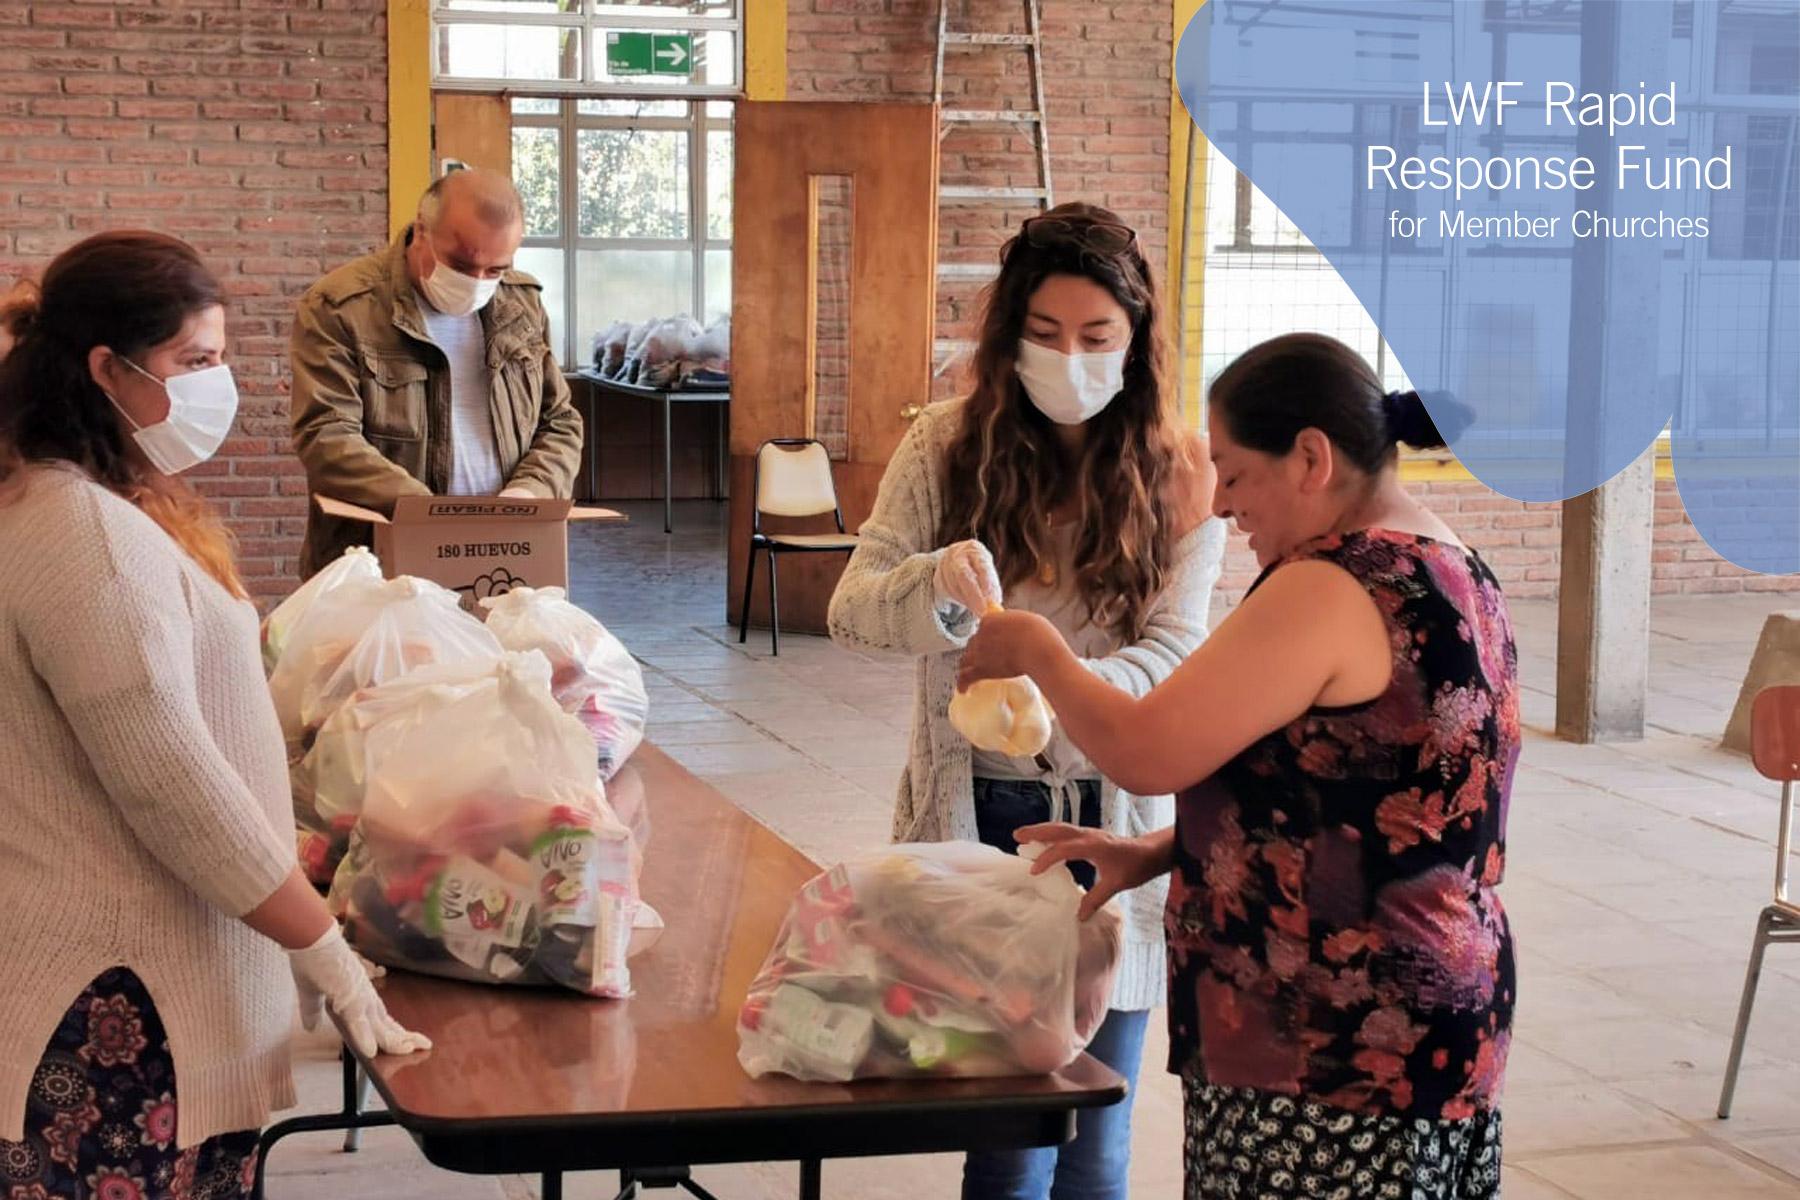 Die Lutherische Kirche in Chile organisierte die Lebensmittelverteilung, um Menschen zu helfen, die aufgrund der COVID-19-Pandemie ihre Arbeitsstelle verloren hatten. Foto: ILCH